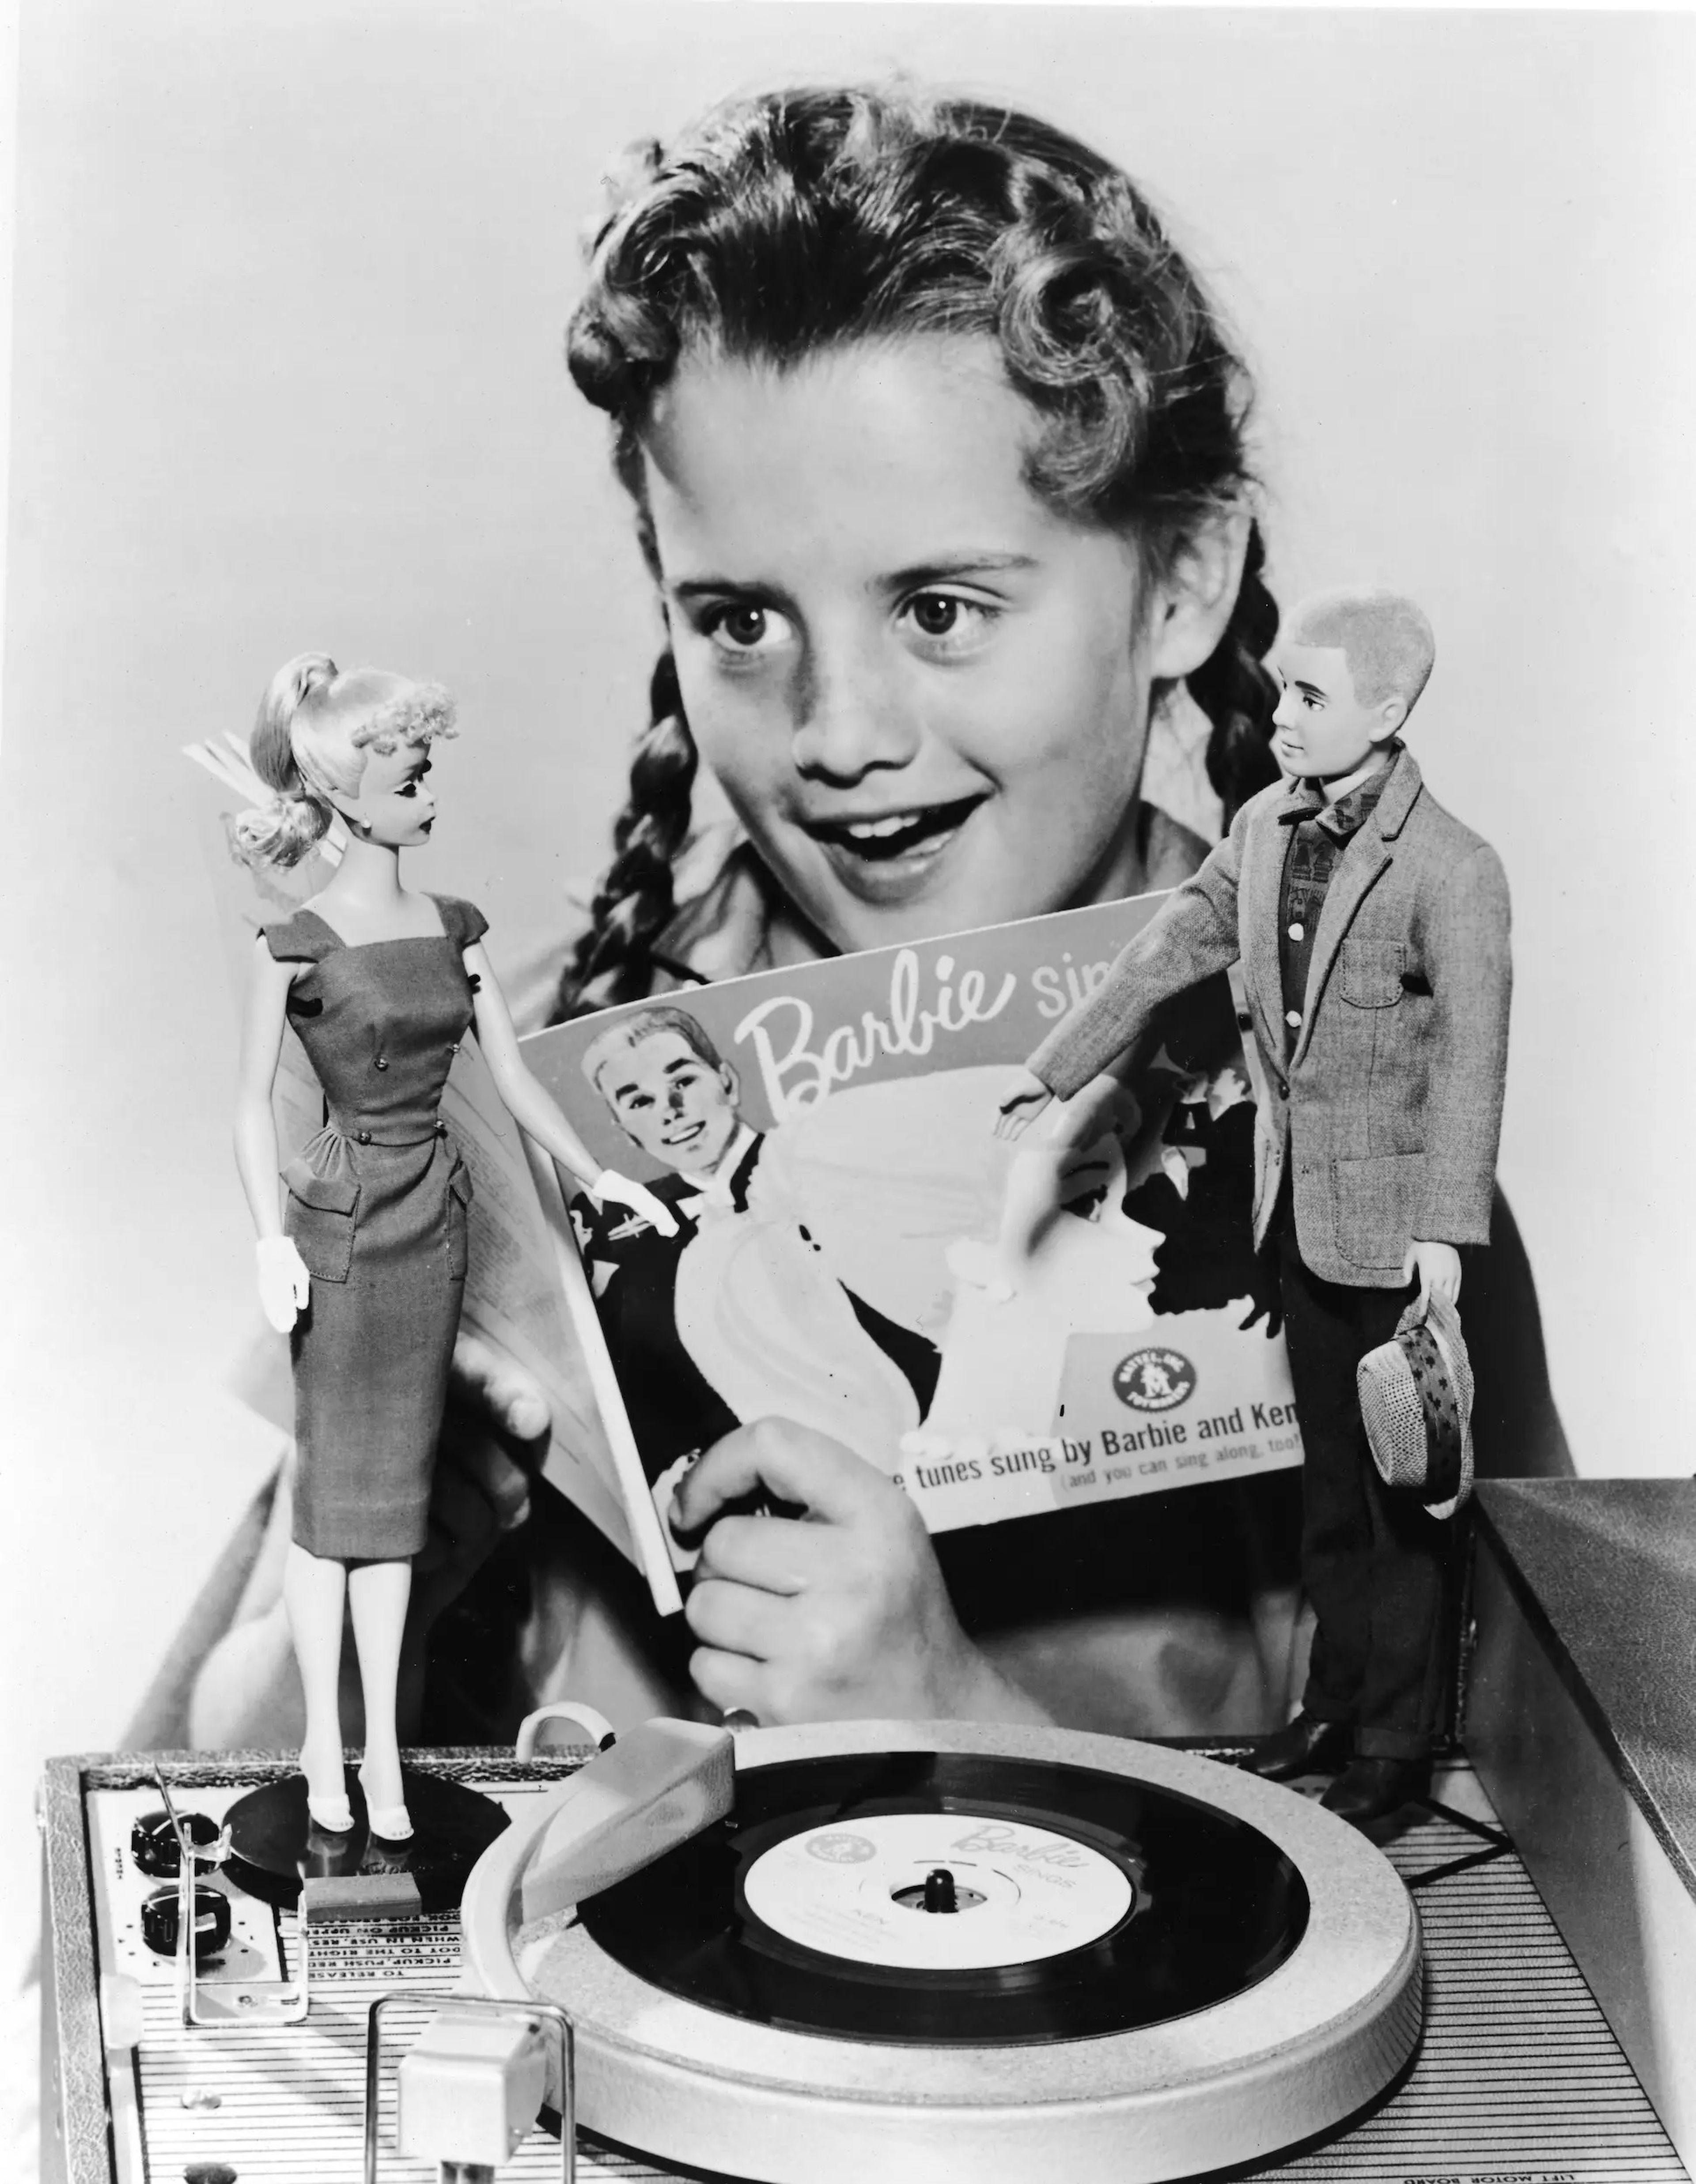 Una niña cantando junto a sus muñecos Barbie y Ken una canción llamada 'Barbie Sings' en 1961.